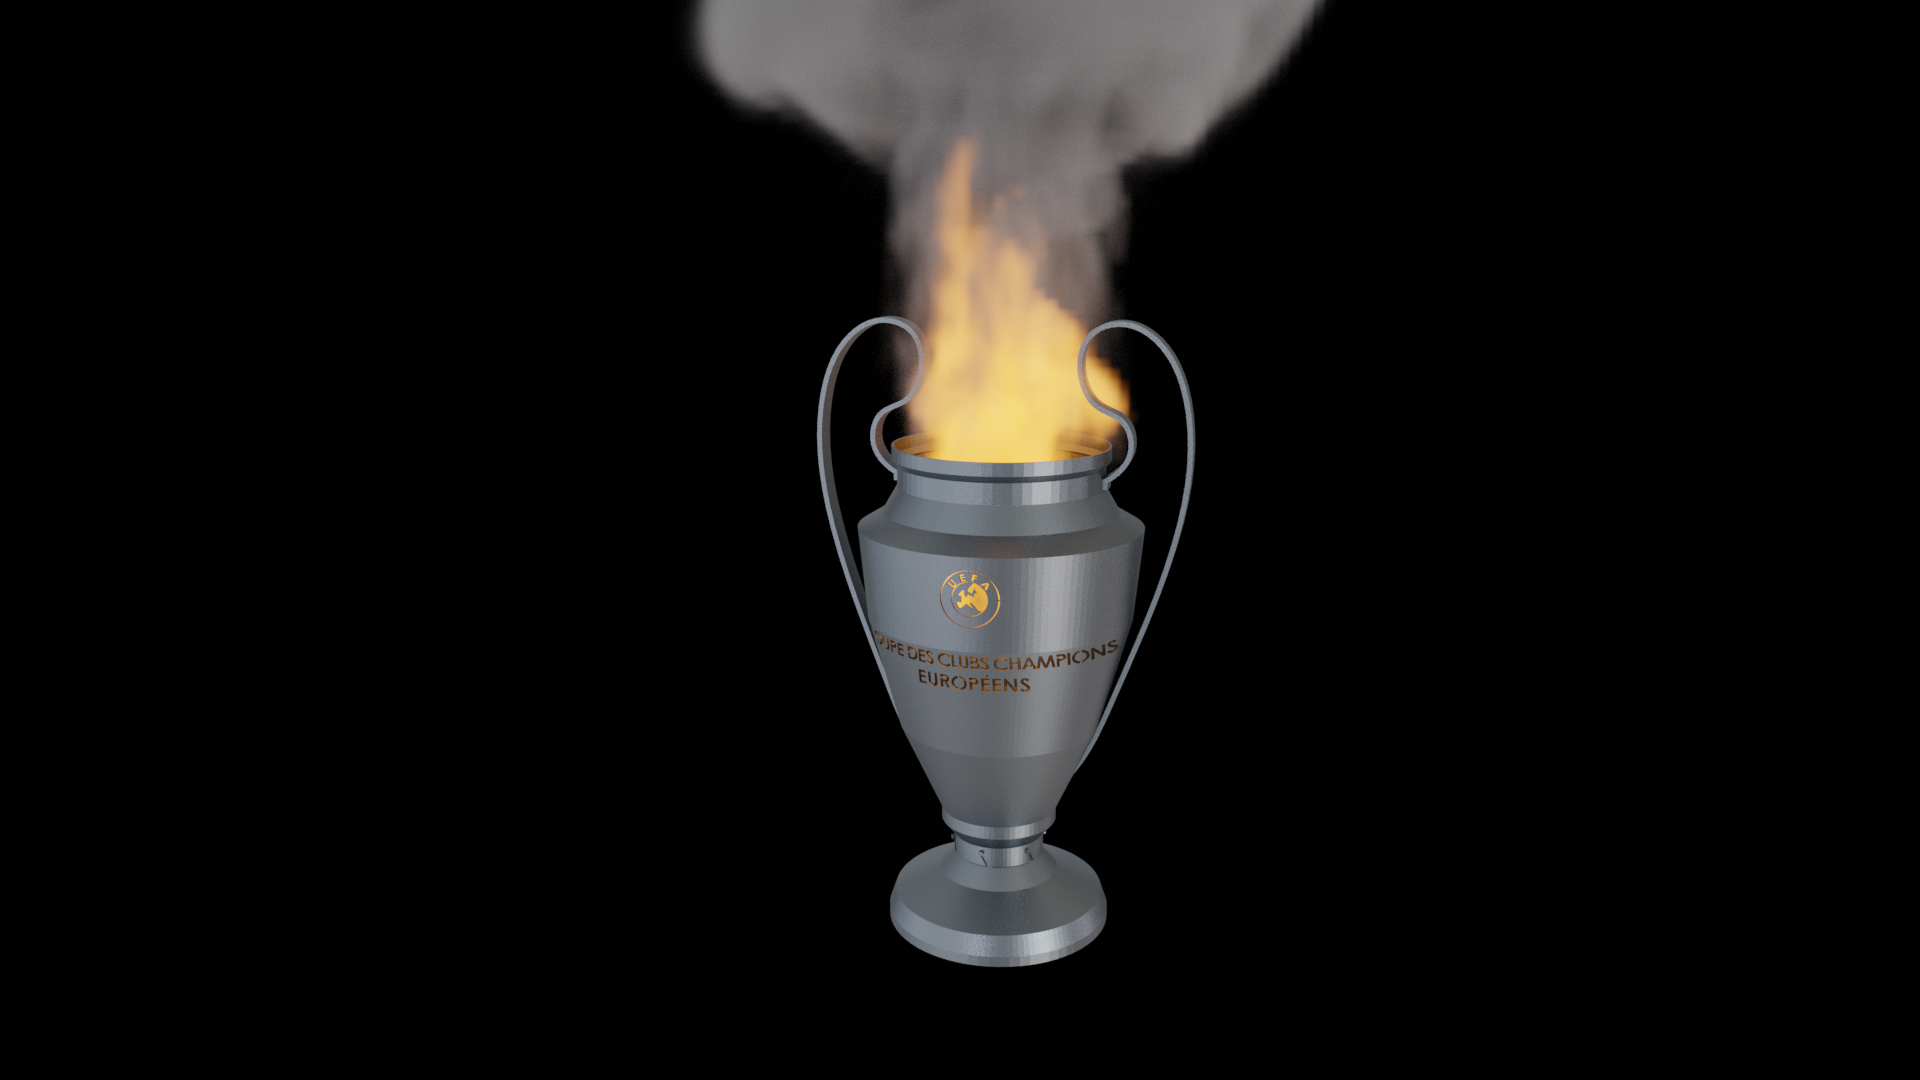 UEFA Champions League - Trophy Fire-pit